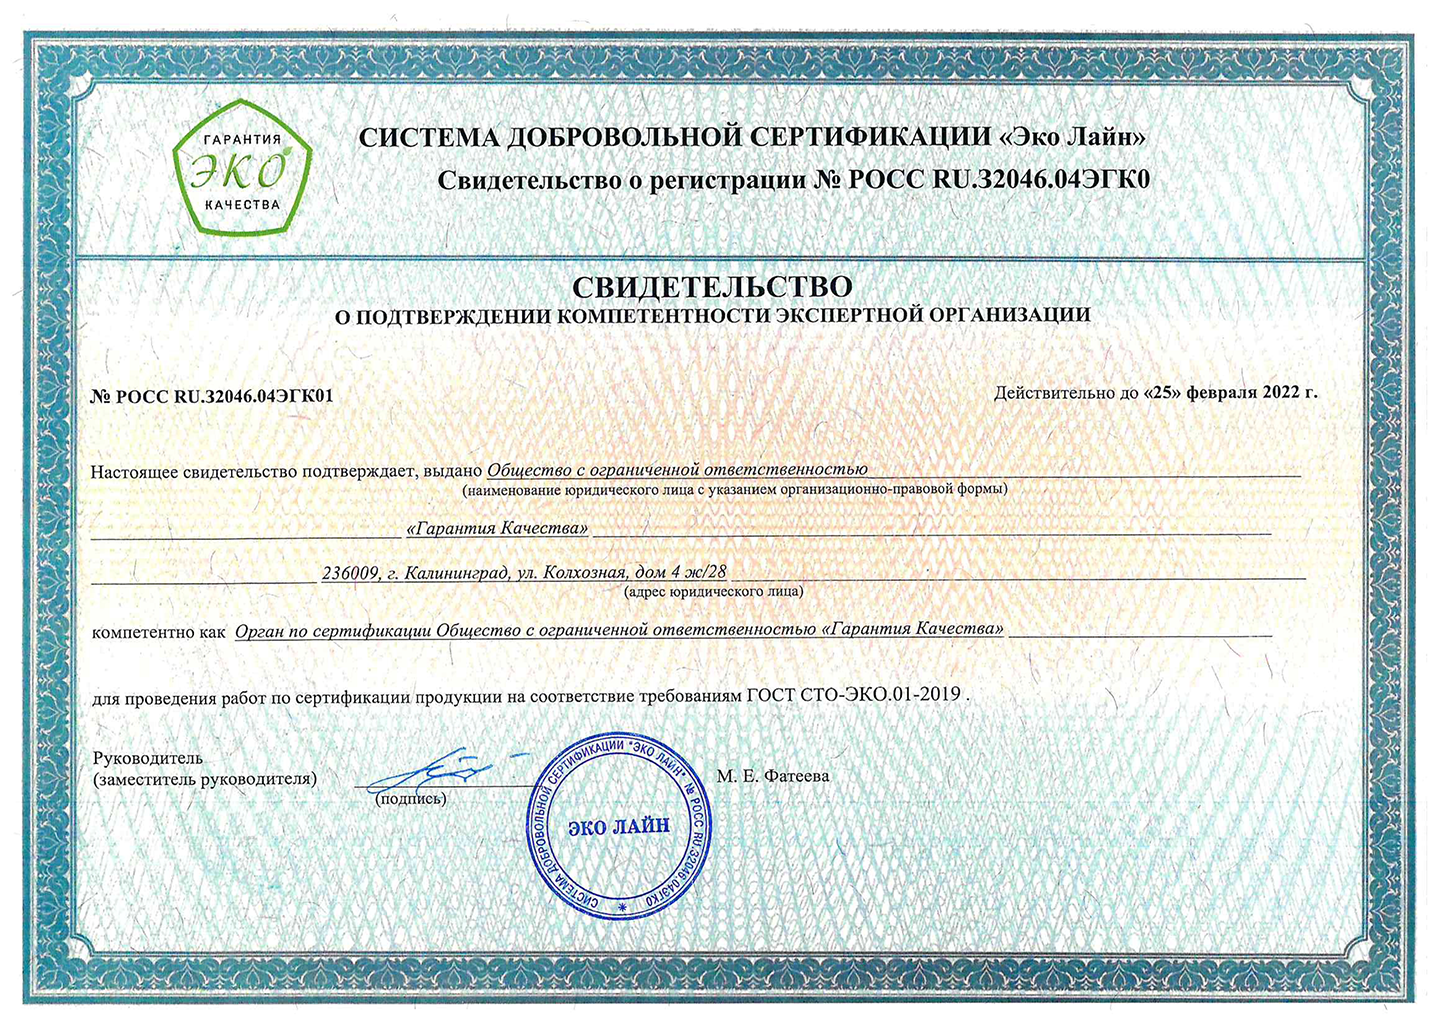 Сертификат организации выдавшего СГР БК